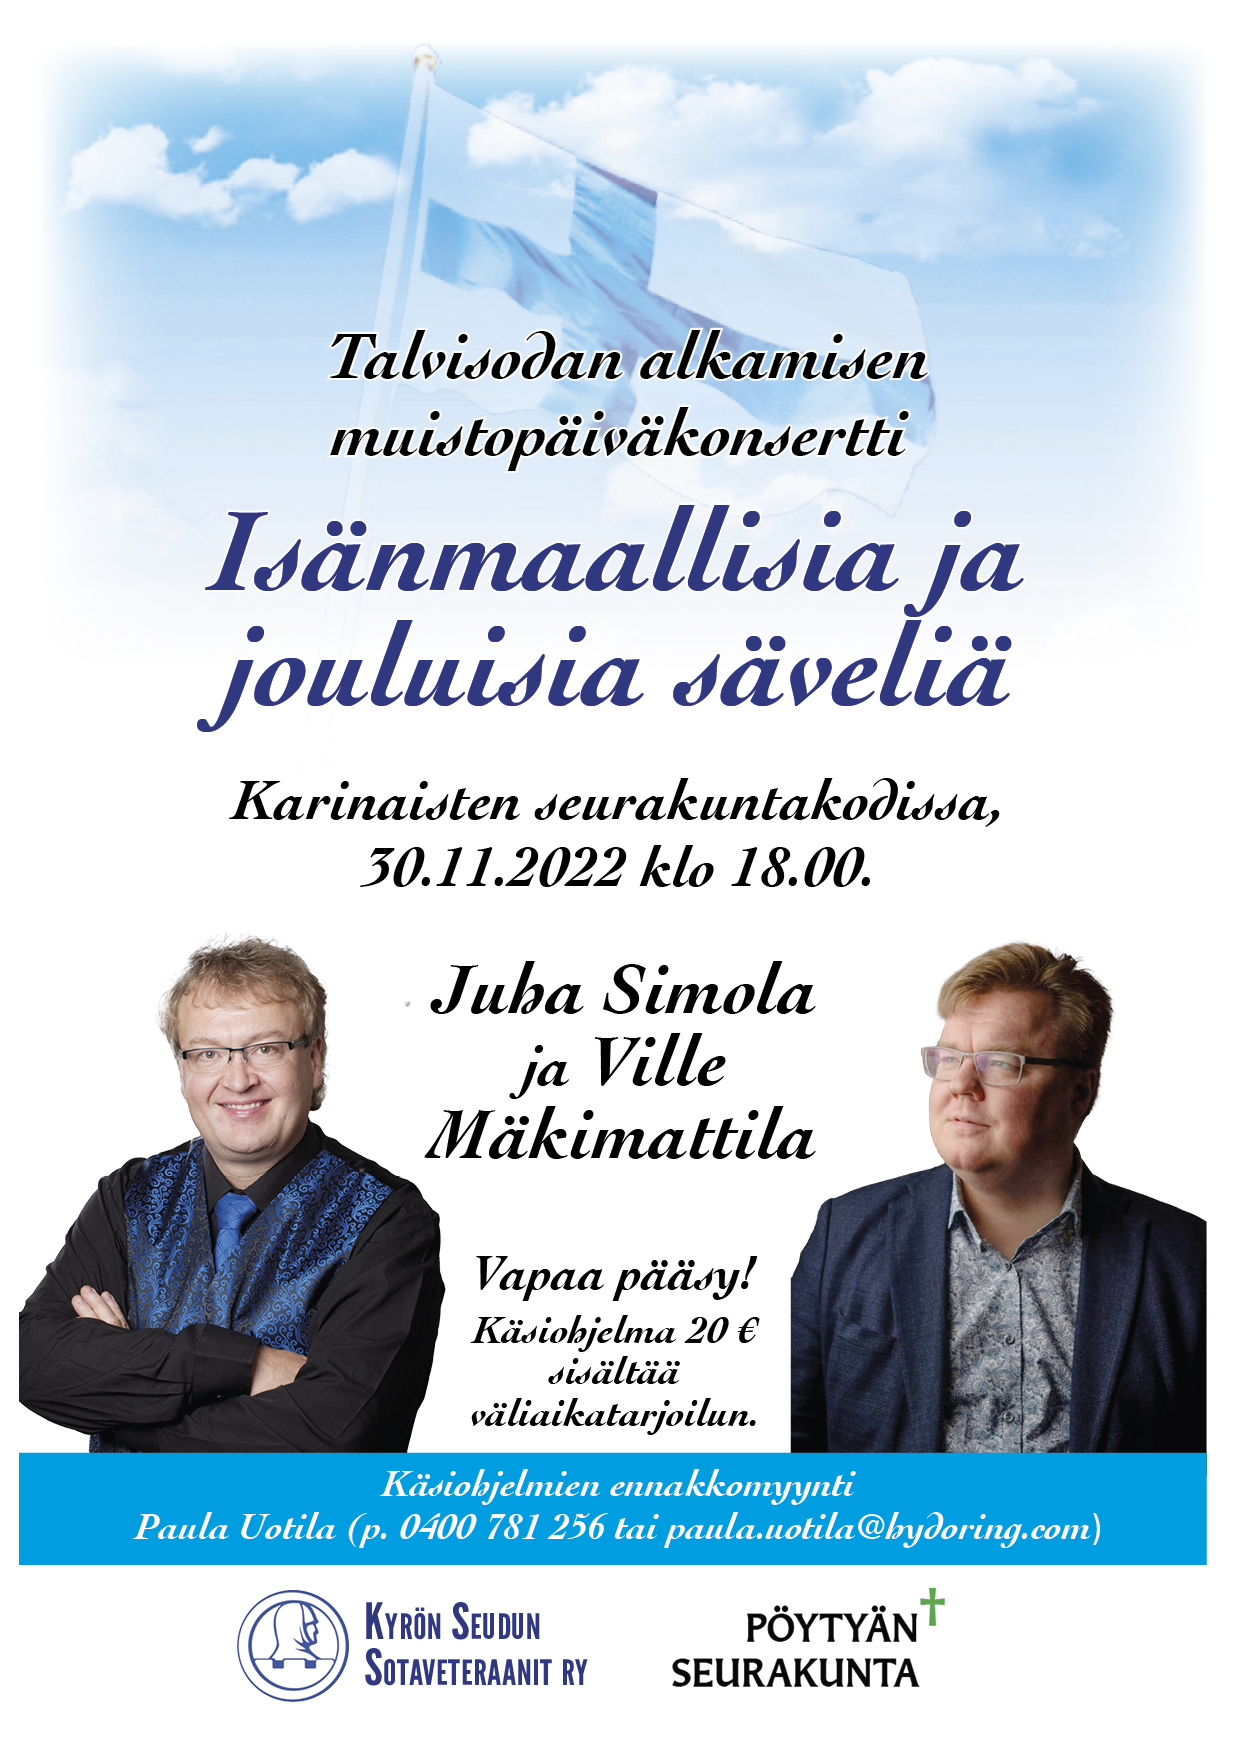 Taustalla sininen taivas ja suomen lippu sekä esiintyjät Juha Simola ja Ville Mäkimattila